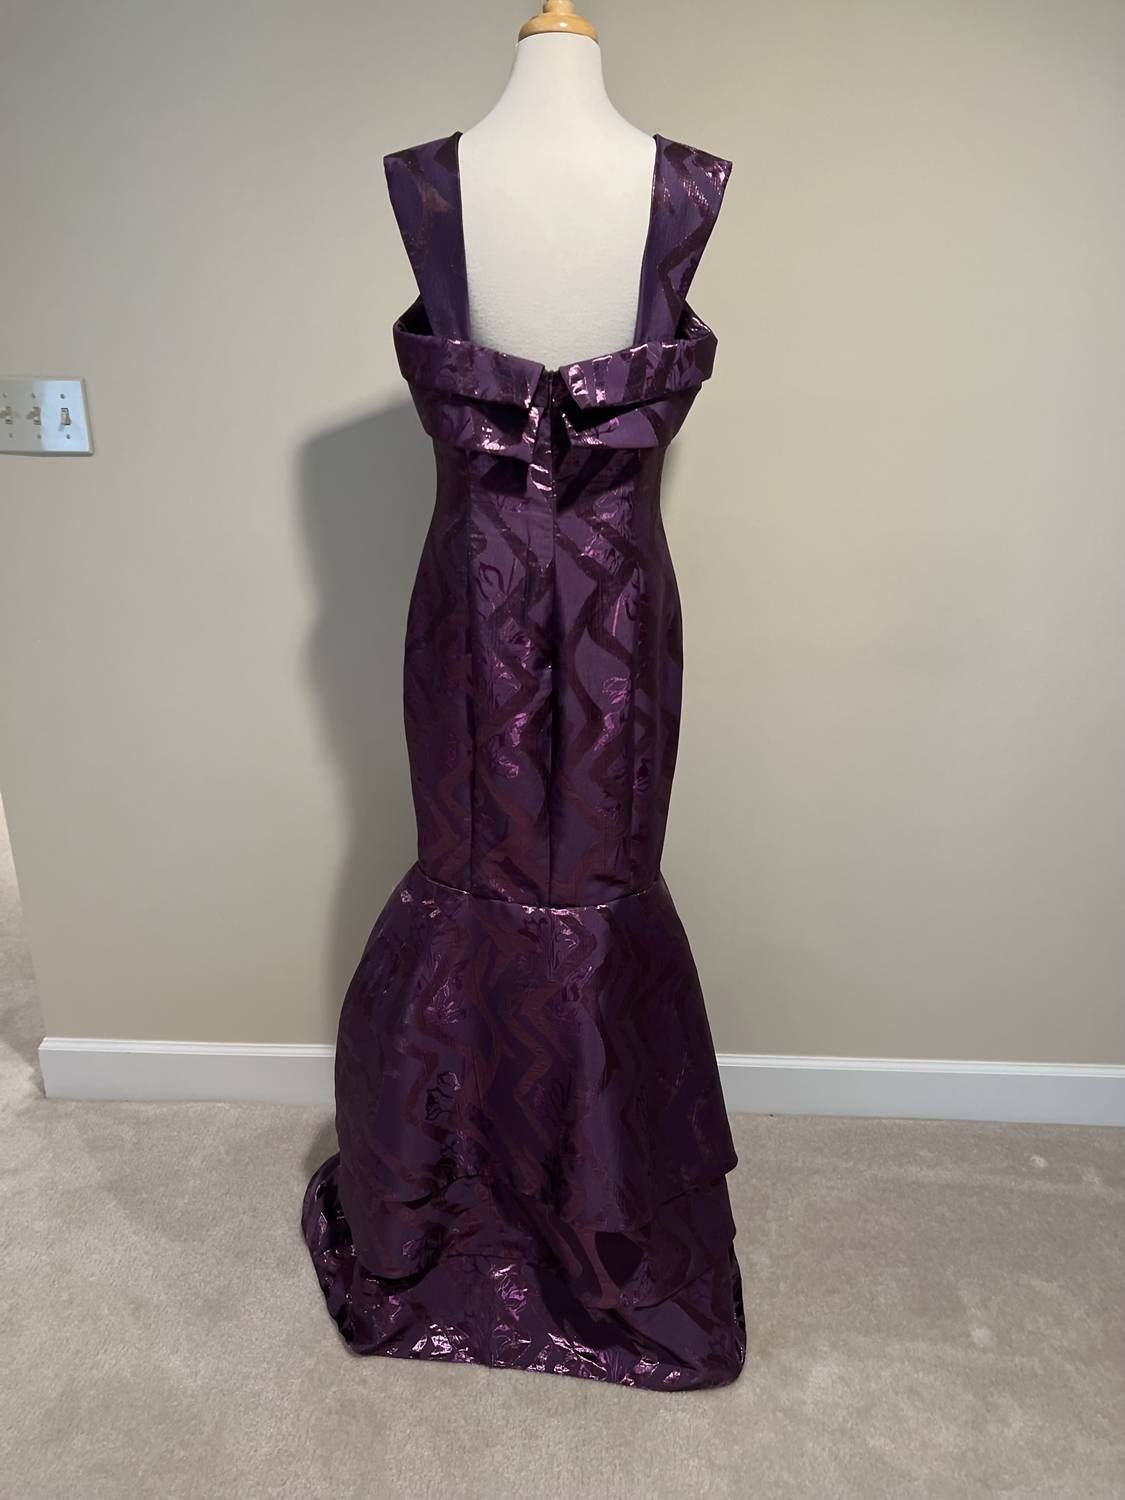 Style 1-3356953593-238 John Paul Ataker Size 12 Prom Purple Mermaid Dress on Queenly